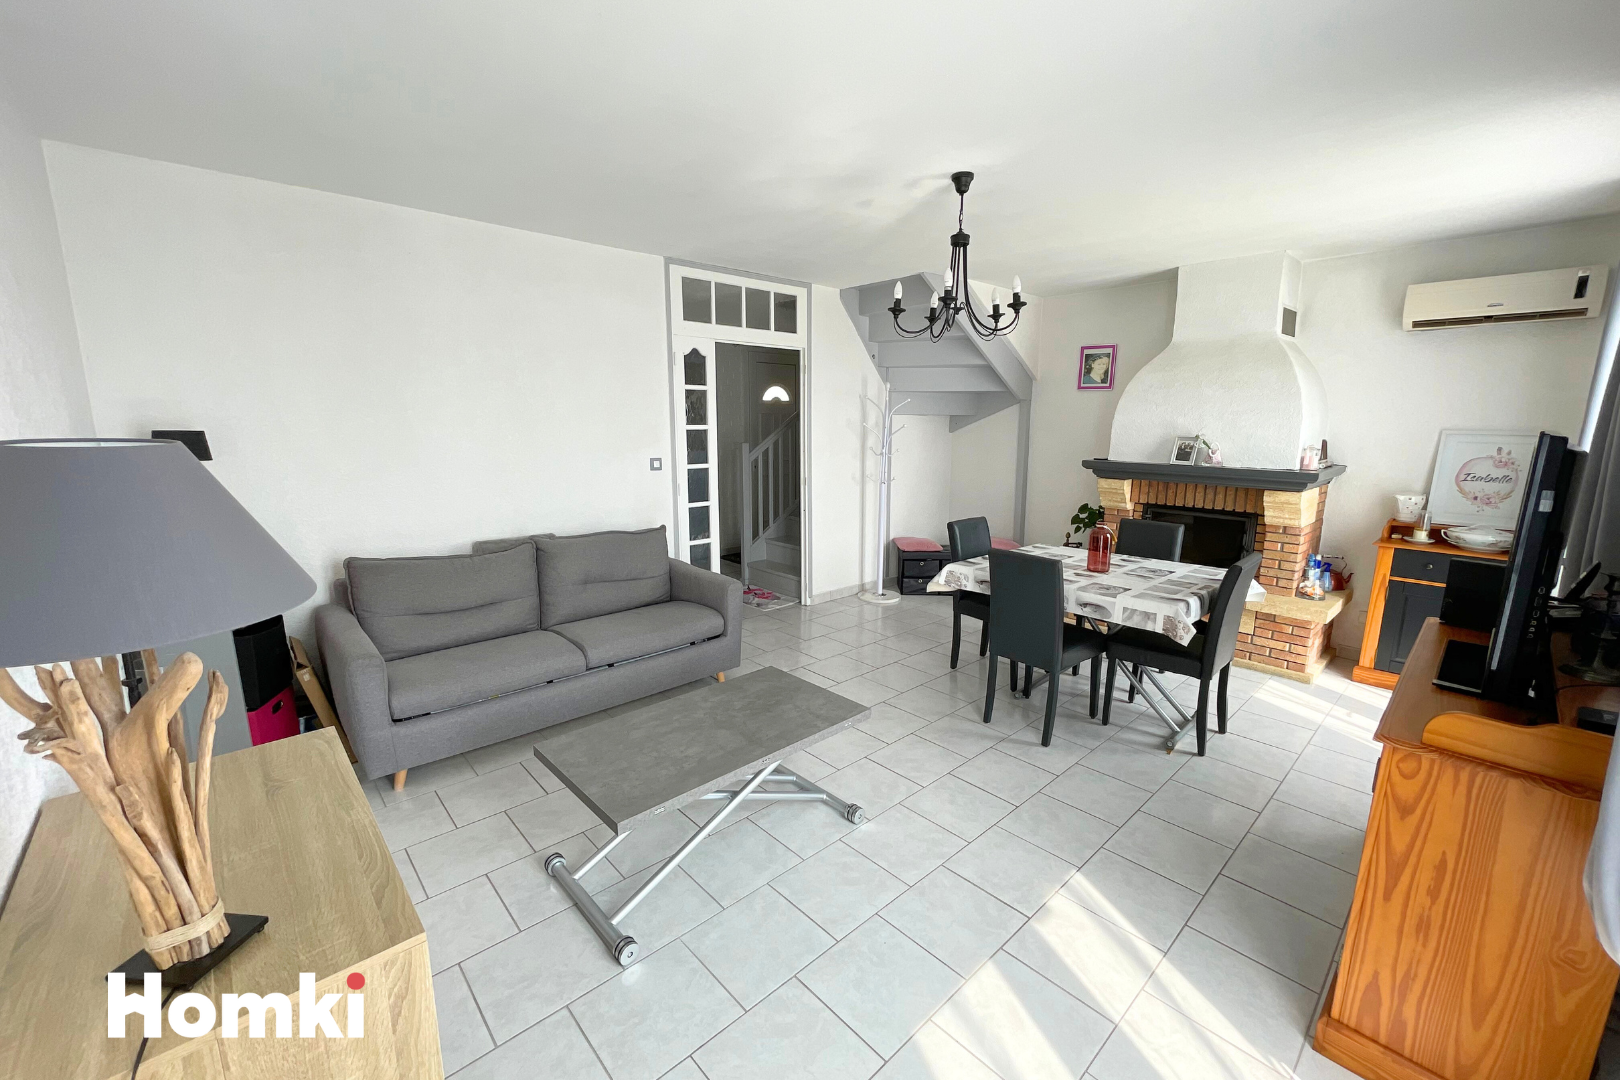 Homki - Vente Maison/villa  de 90.3 m² à Fos-sur-Mer 13270